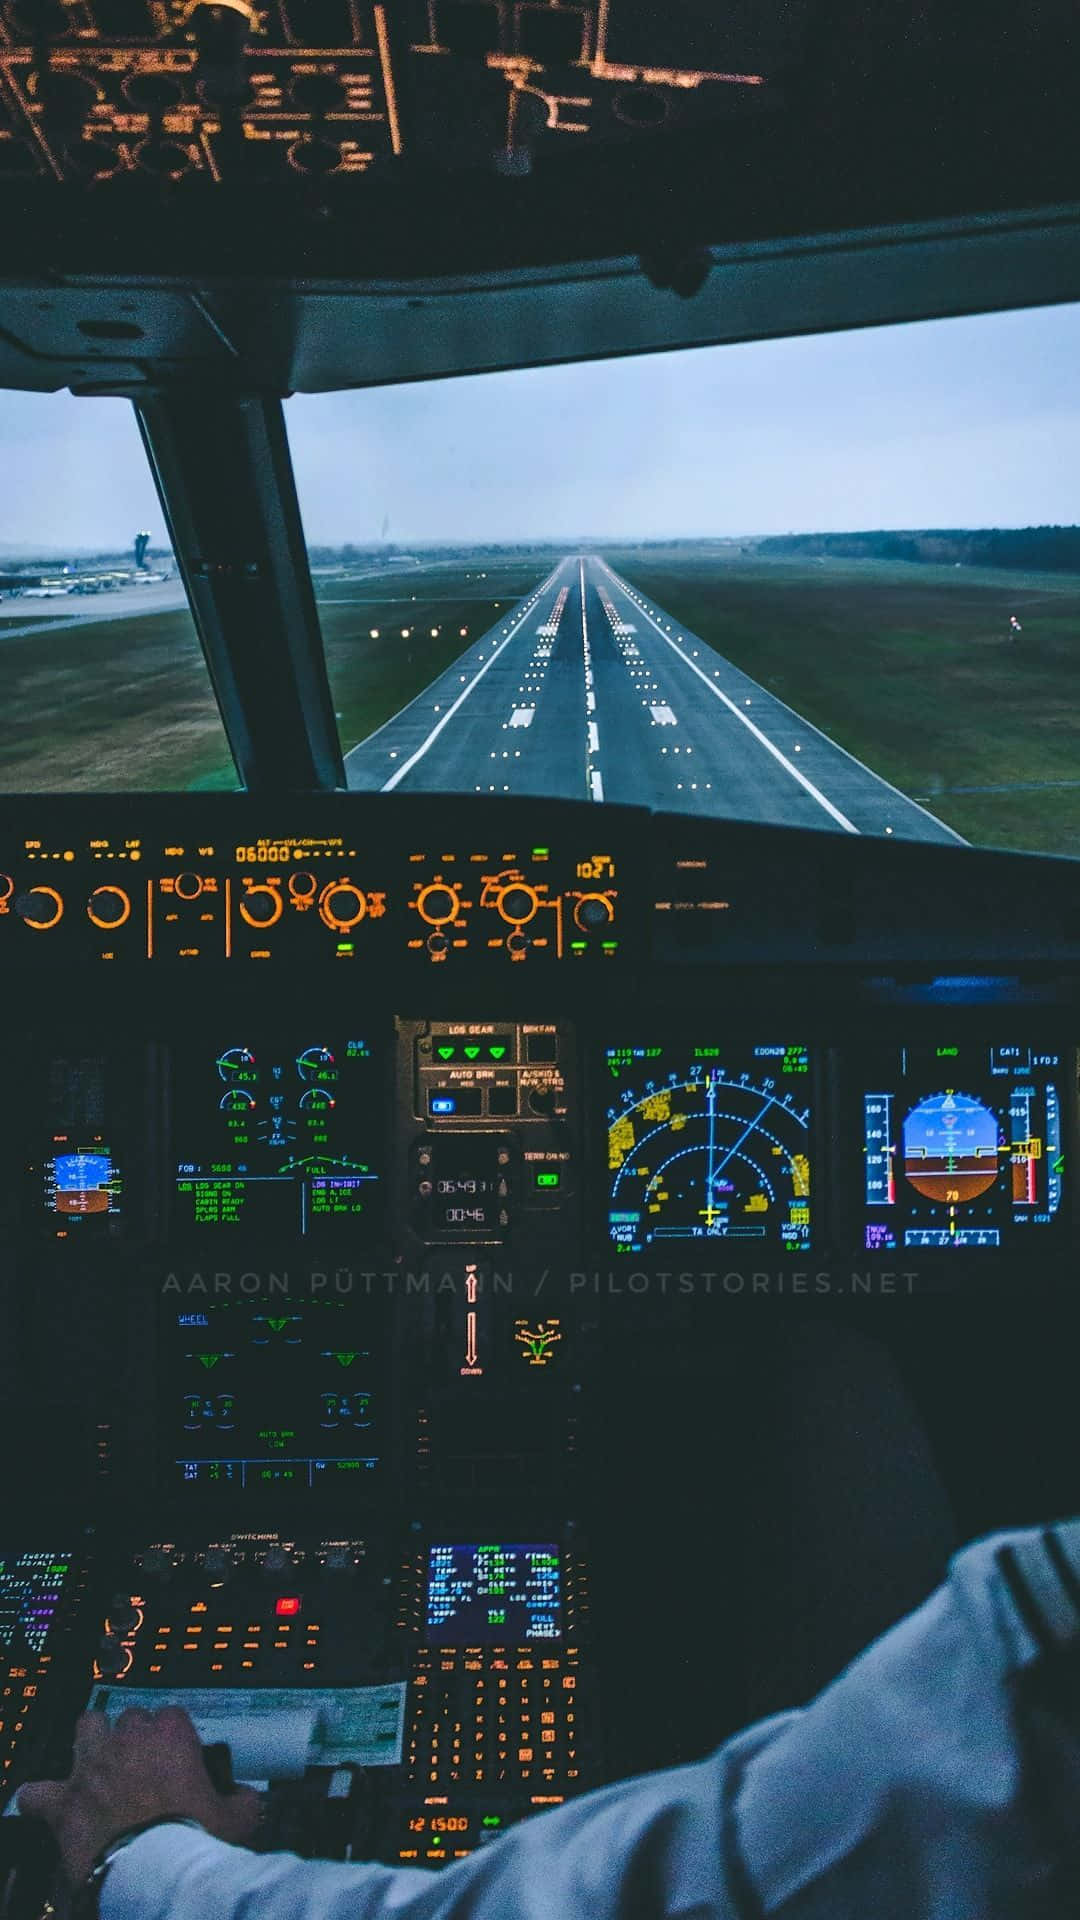 Einpilot Sitzt Im Cockpit Eines Flugzeugs. Wallpaper